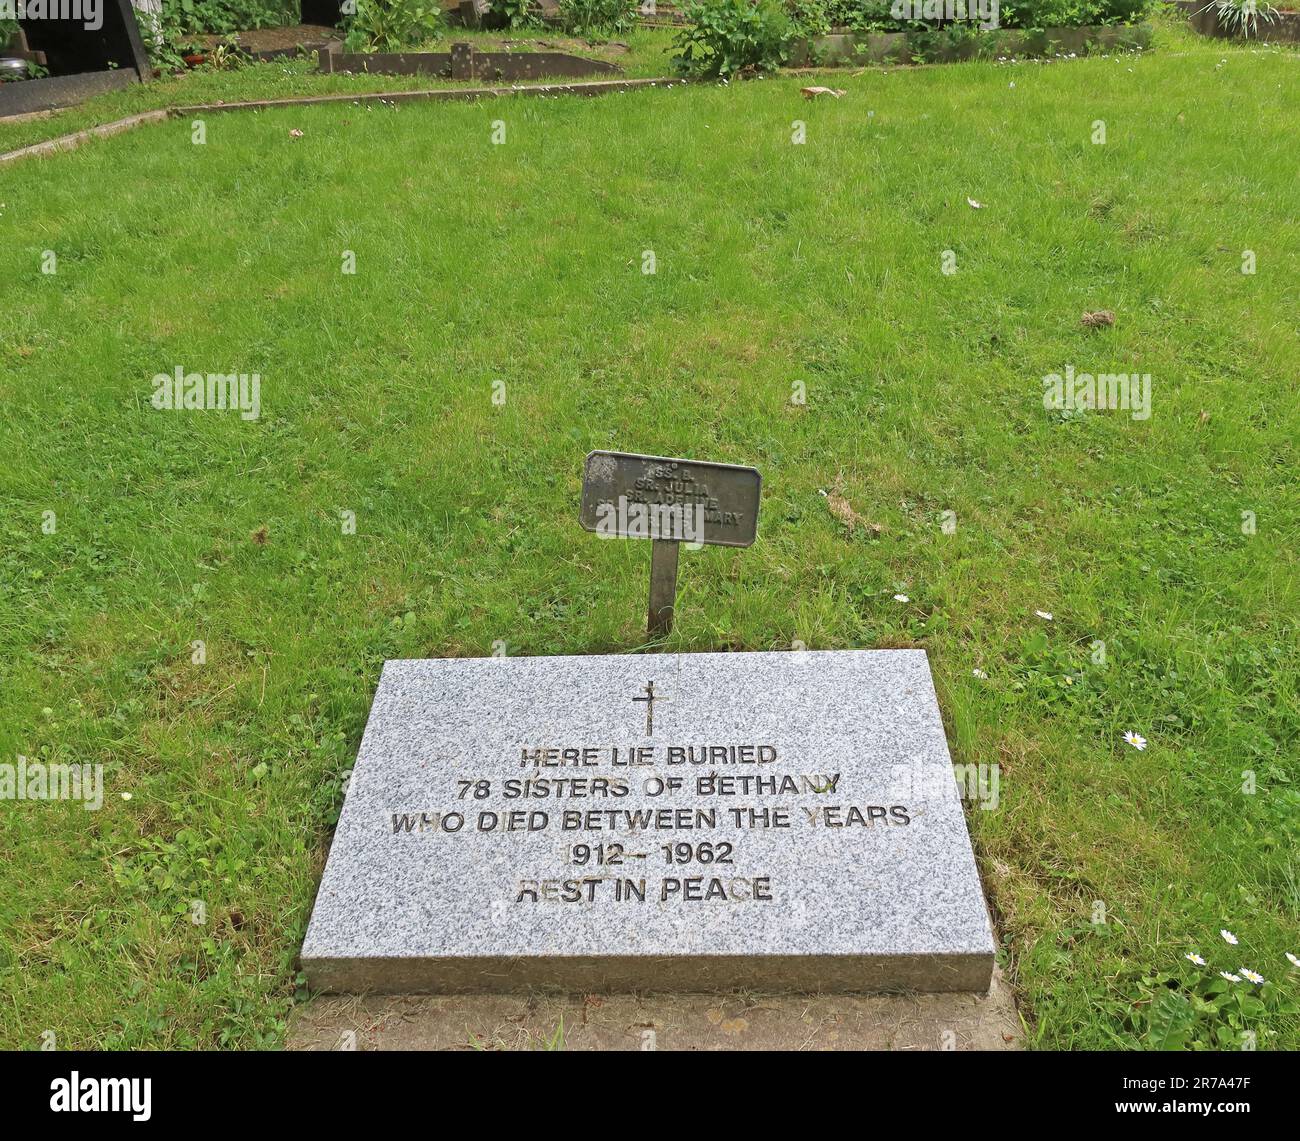 Tombe de 78 sœurs de Bethany, qui sont mortes entre 1912 et 1962, enterrées dans le cimetière de Highgate, Londres, Swain's Lane, N6 6PJ Banque D'Images